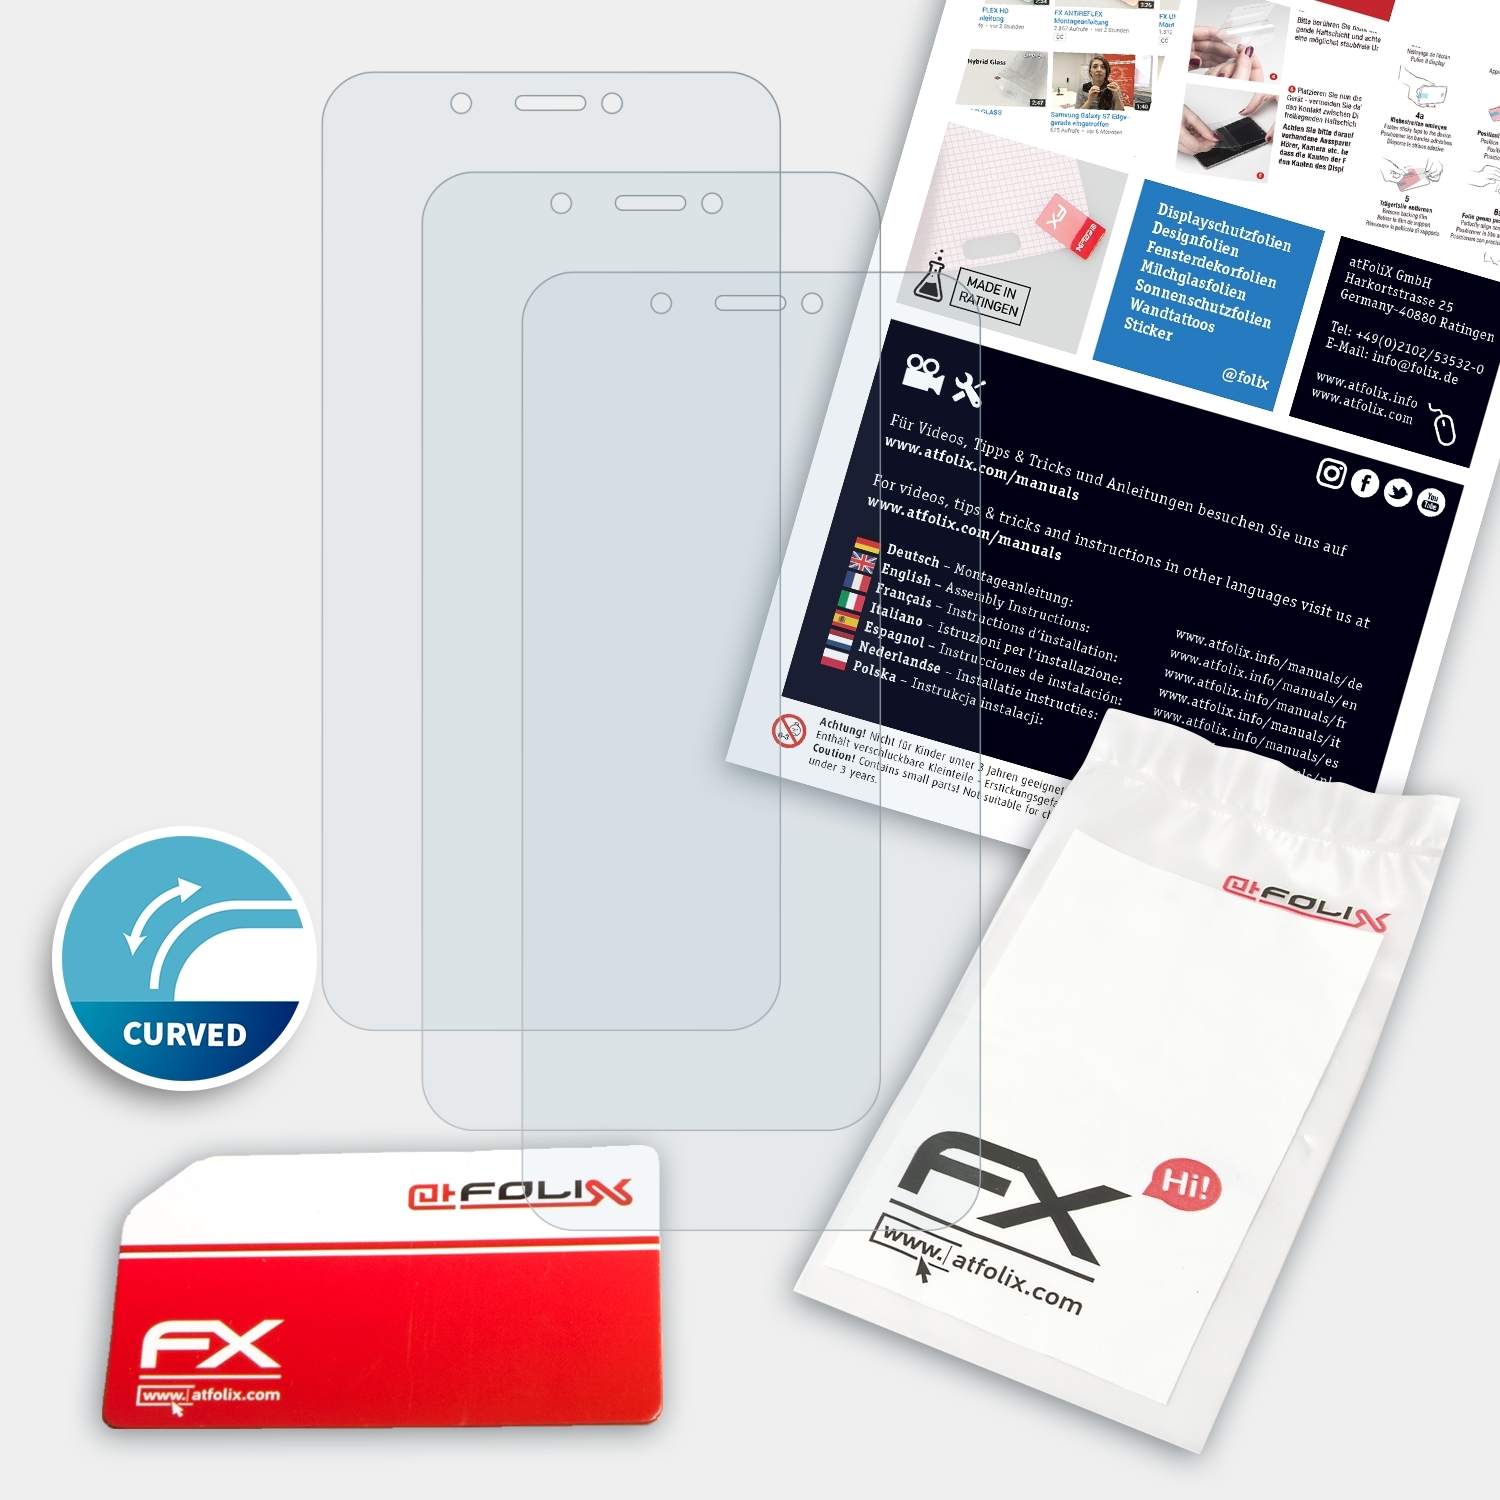 ATFOLIX bq C) FX-ActiFleX Aquaris 3x Displayschutz(für